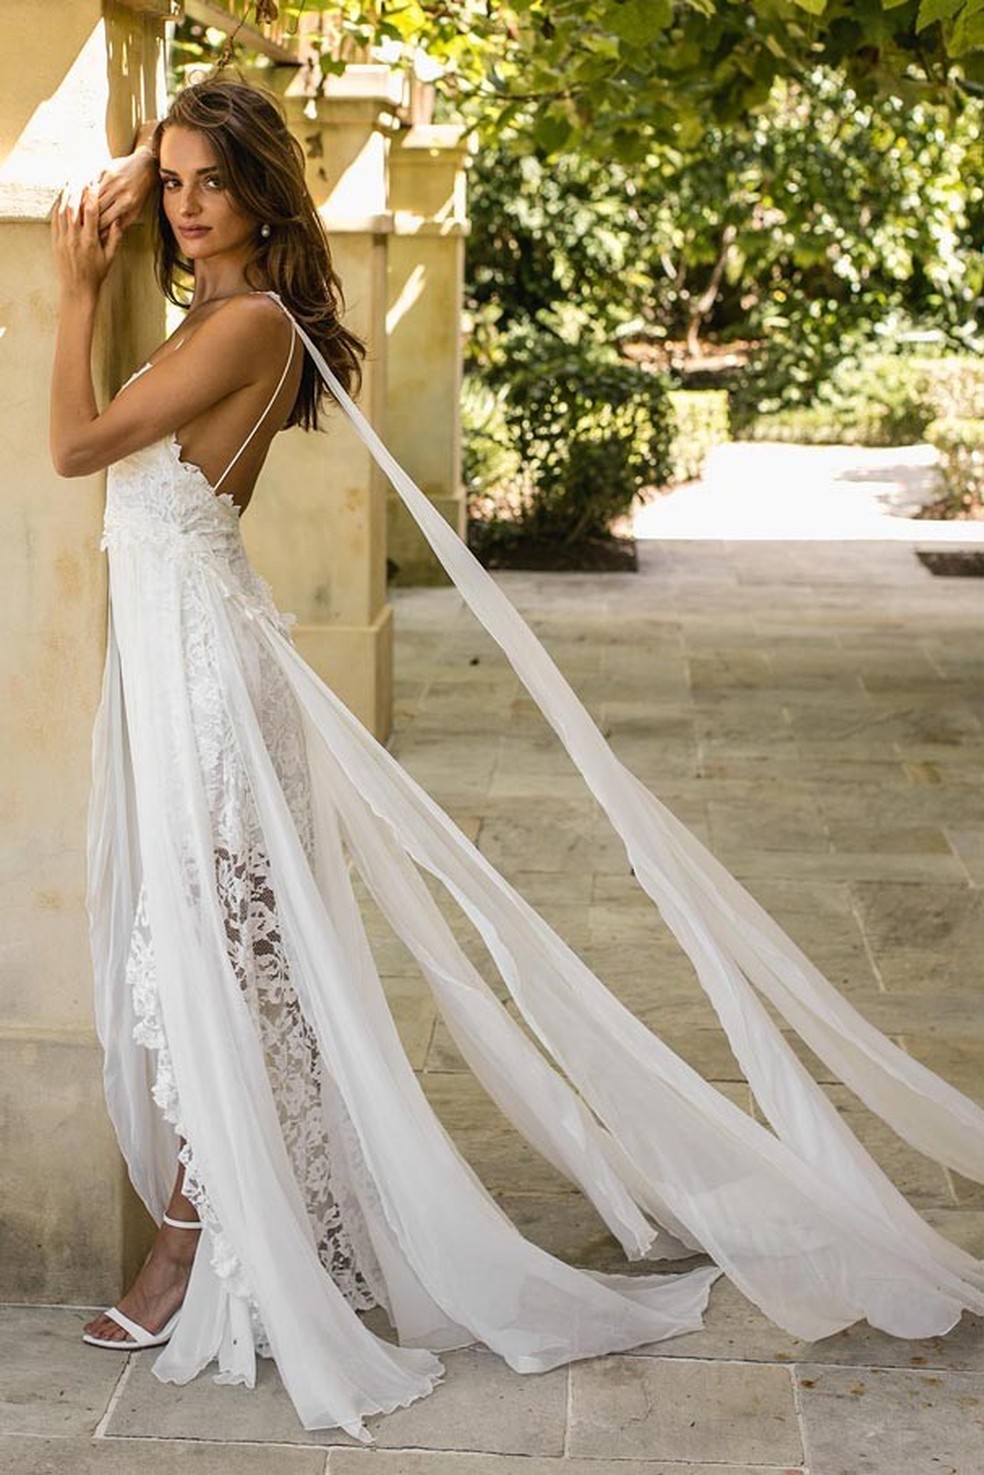 Vestido de noiva amado no Pinterest (Foto: Reprodução) — Foto: Glamour